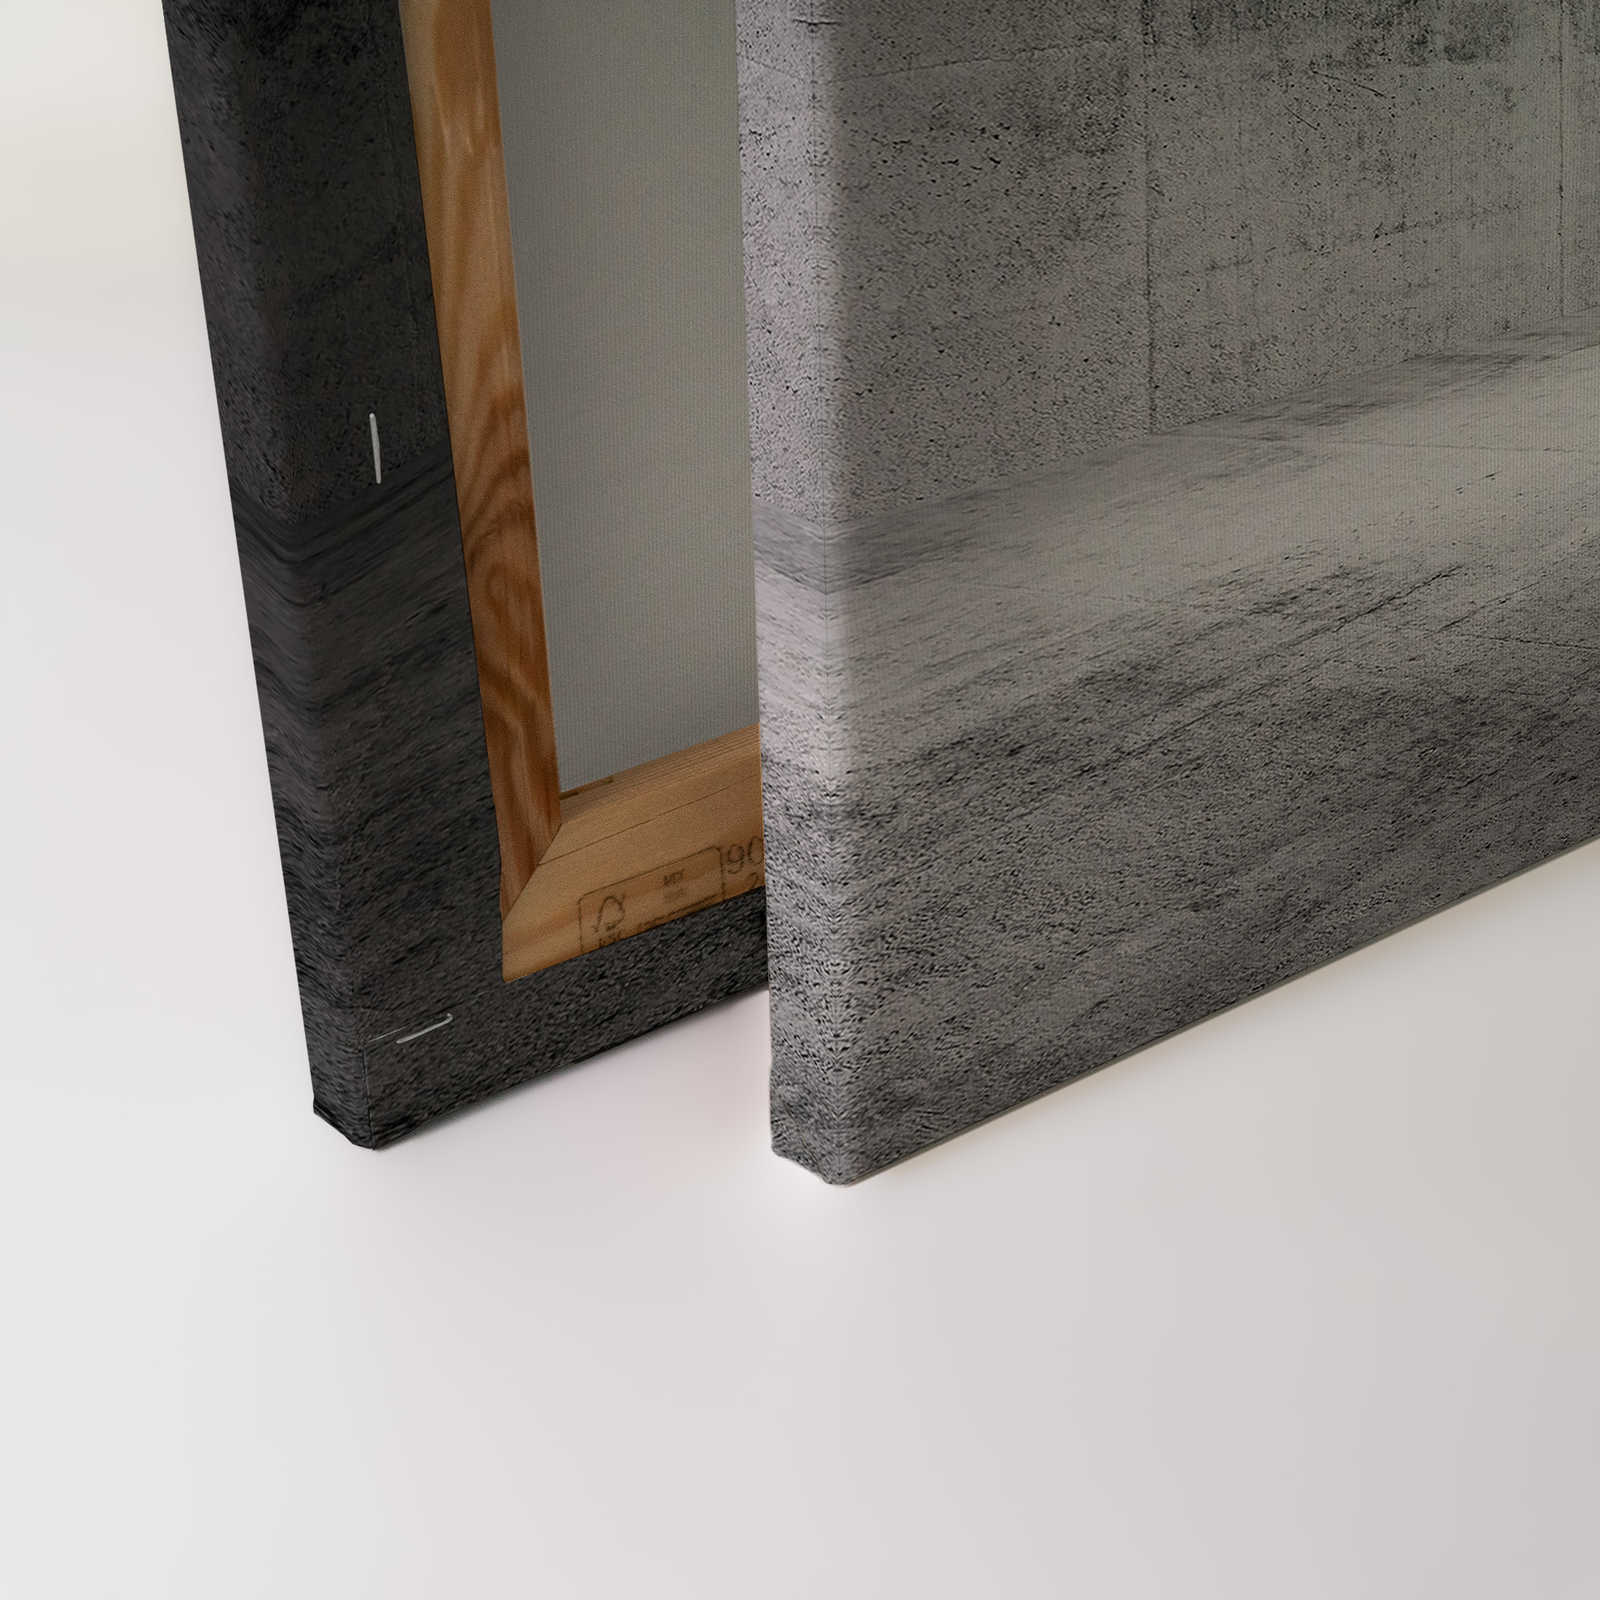             Tableau sur toile Espace en béton avec effet 3D - 0,90 m x 0,60 m
        